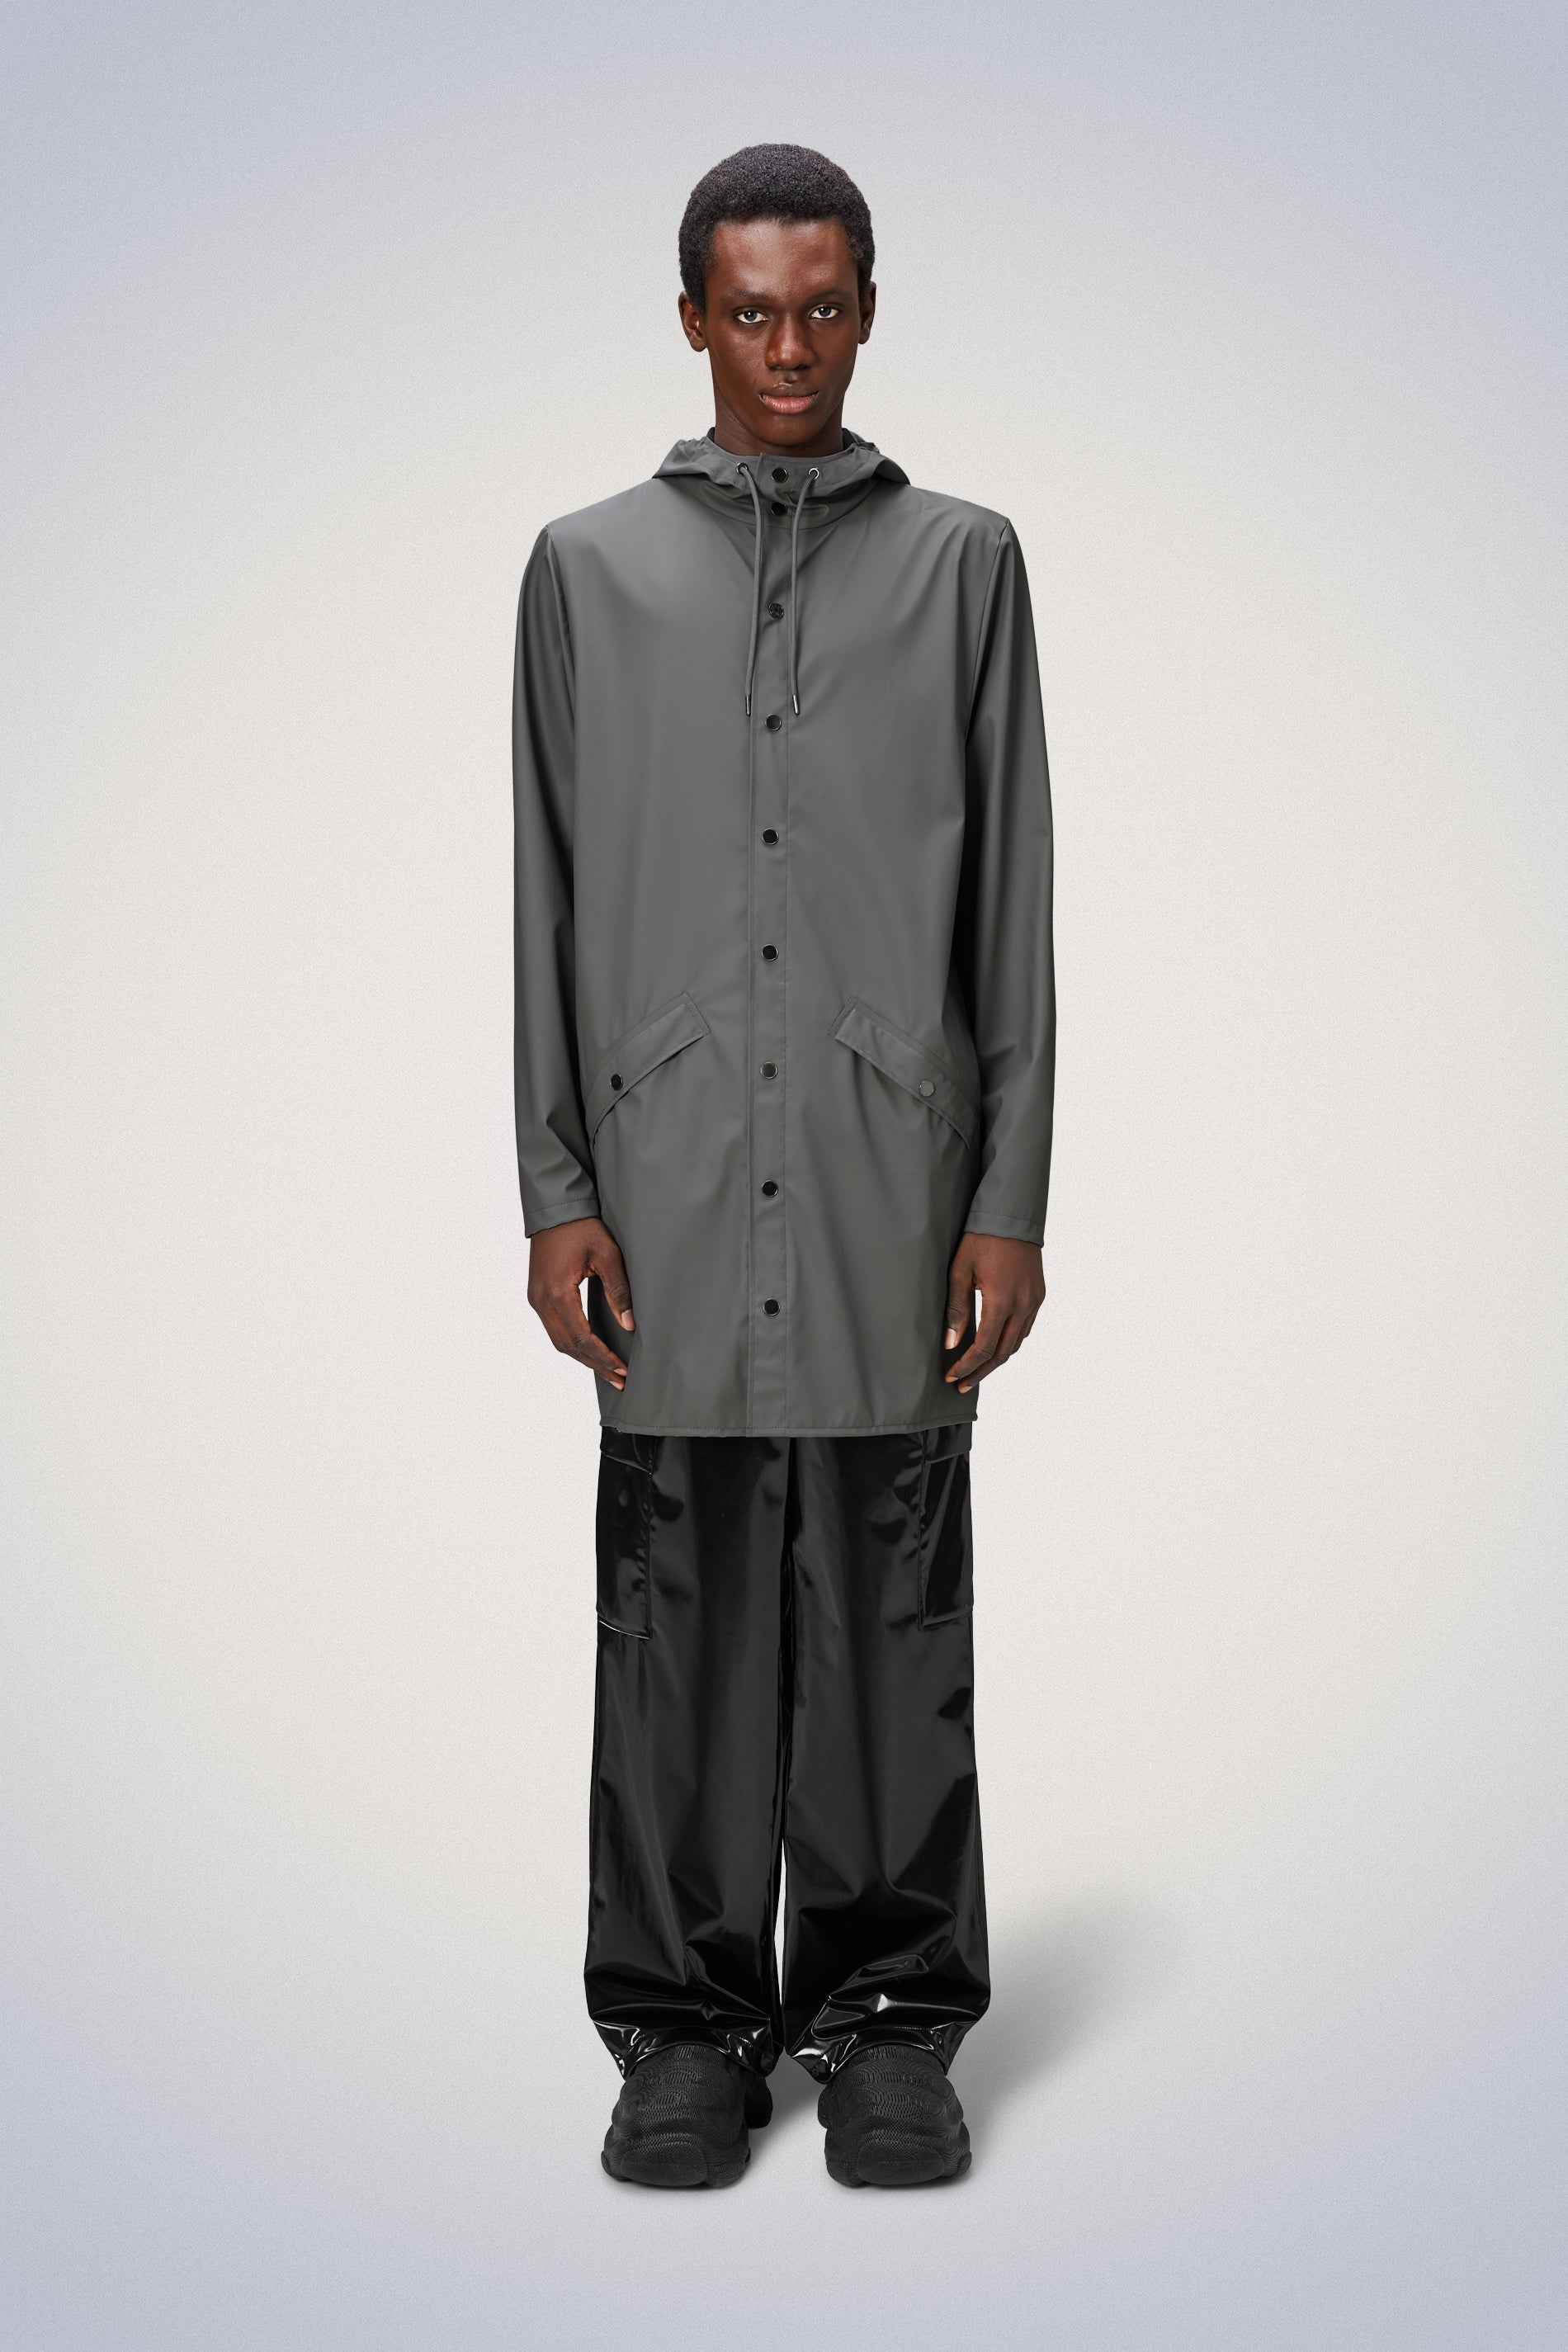 Waterproof Rain Jackets & Coats for Men | Men's Raincoats